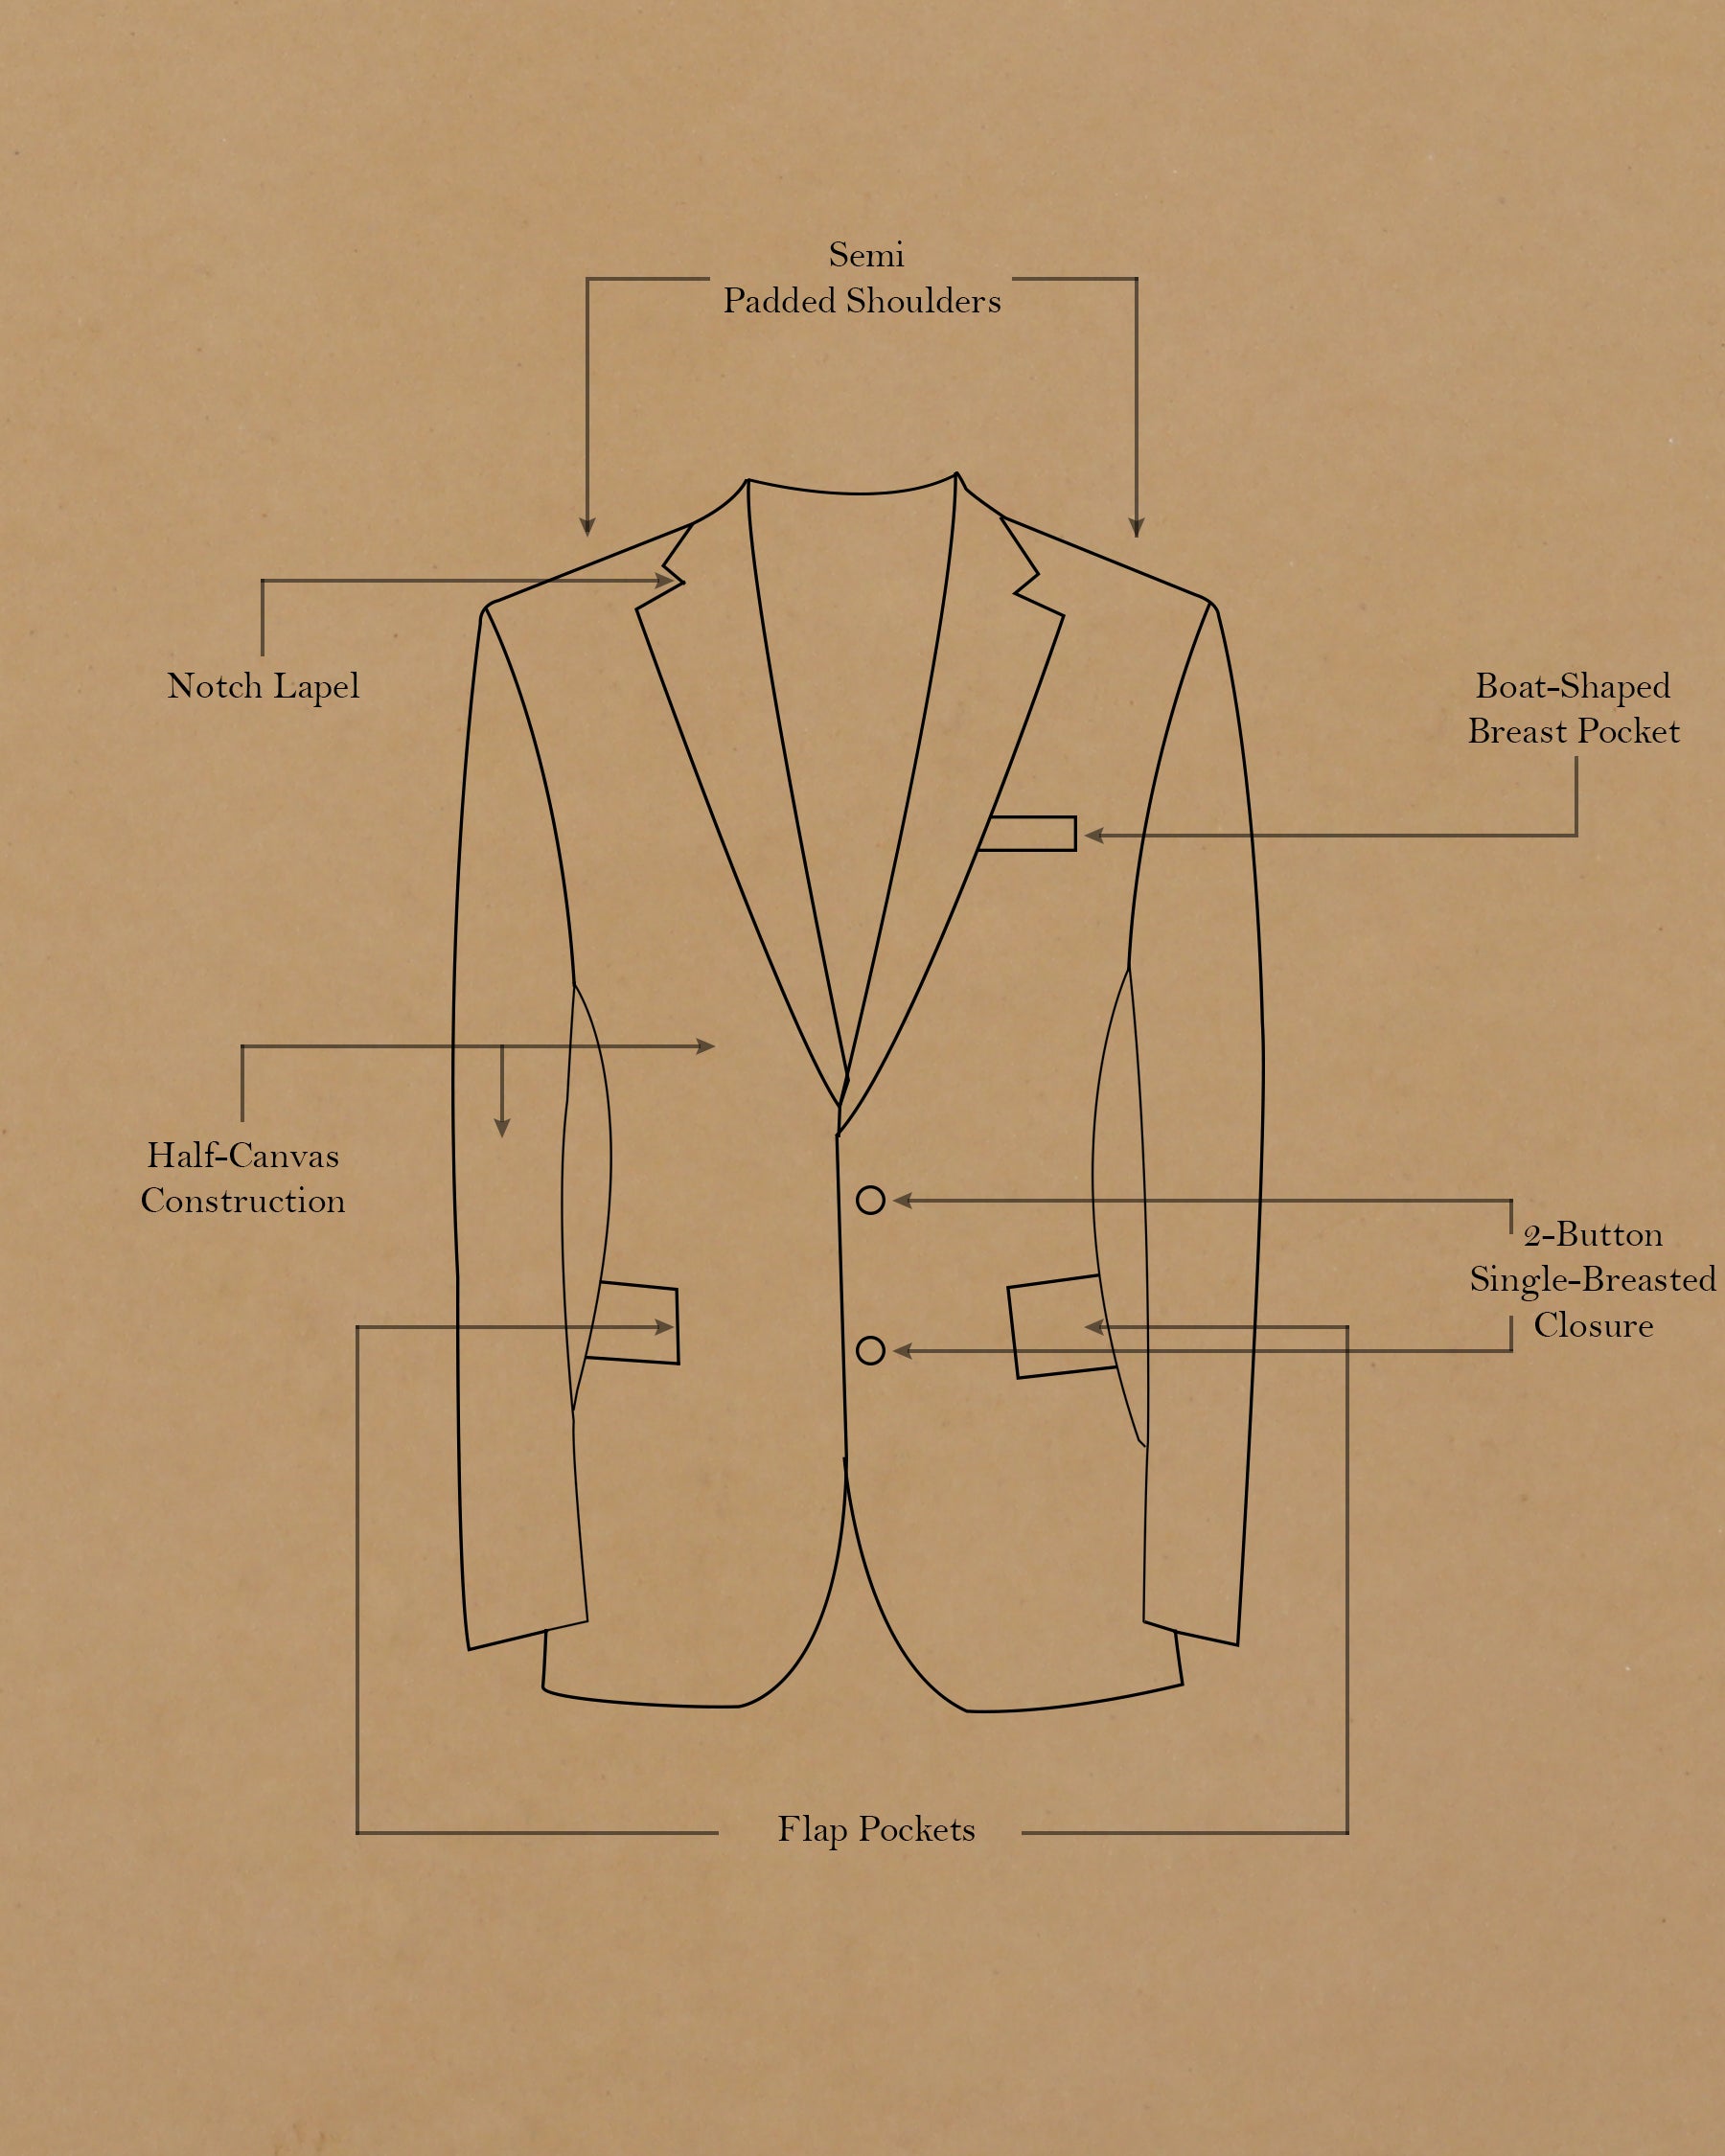 Navy Subtle Pinstriped Premium Cotton Sport Suit